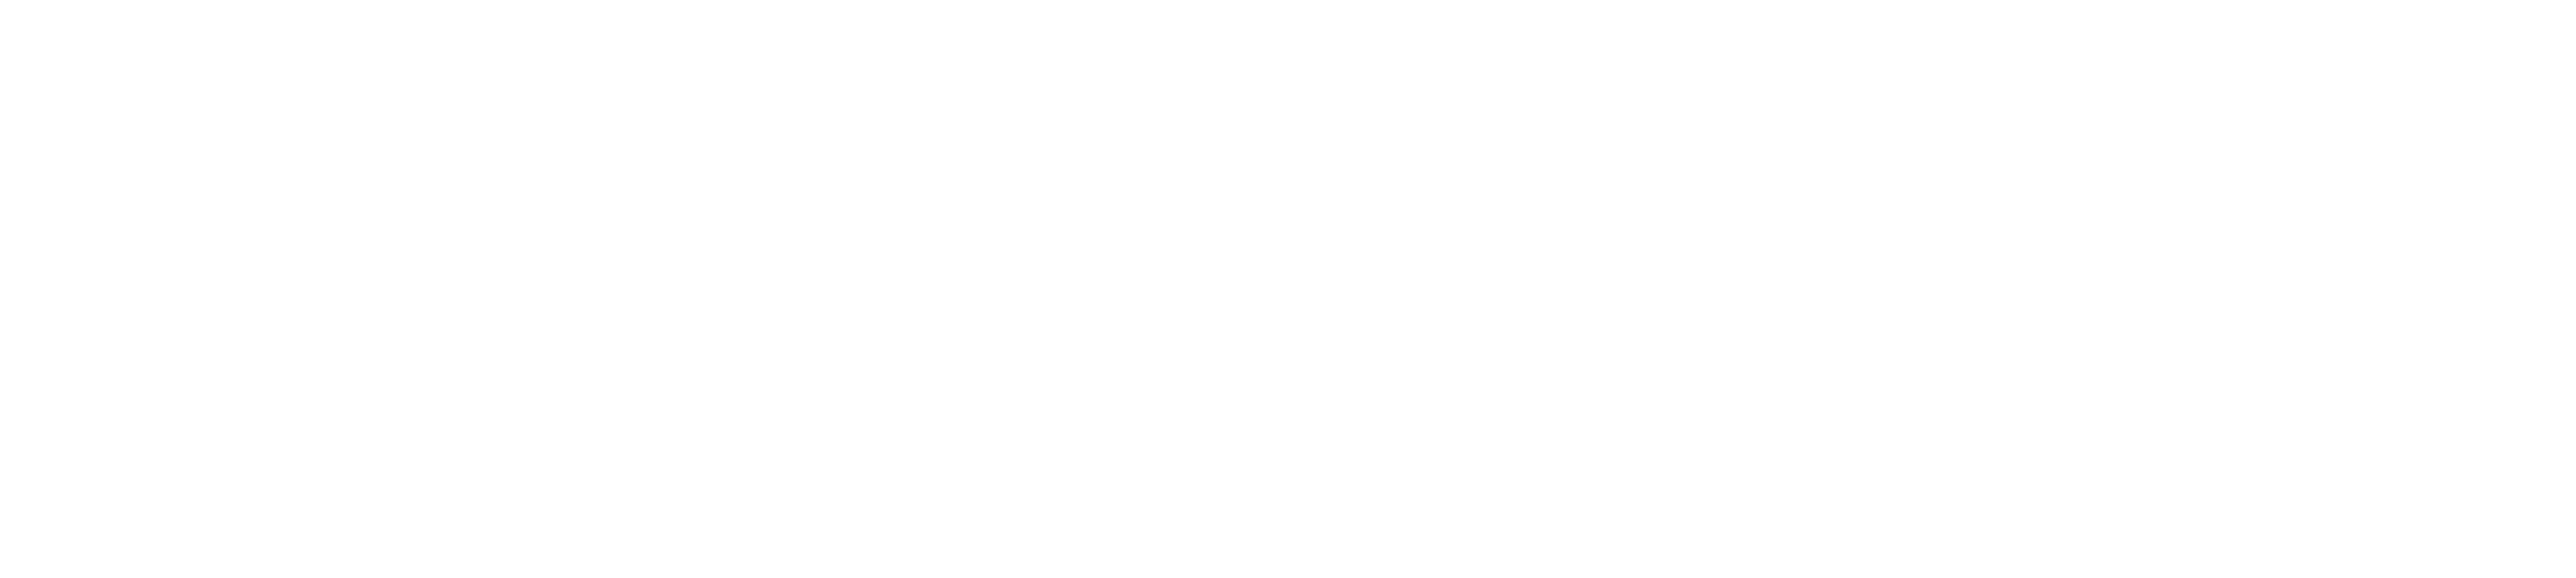 Developer Renovator Network Logo